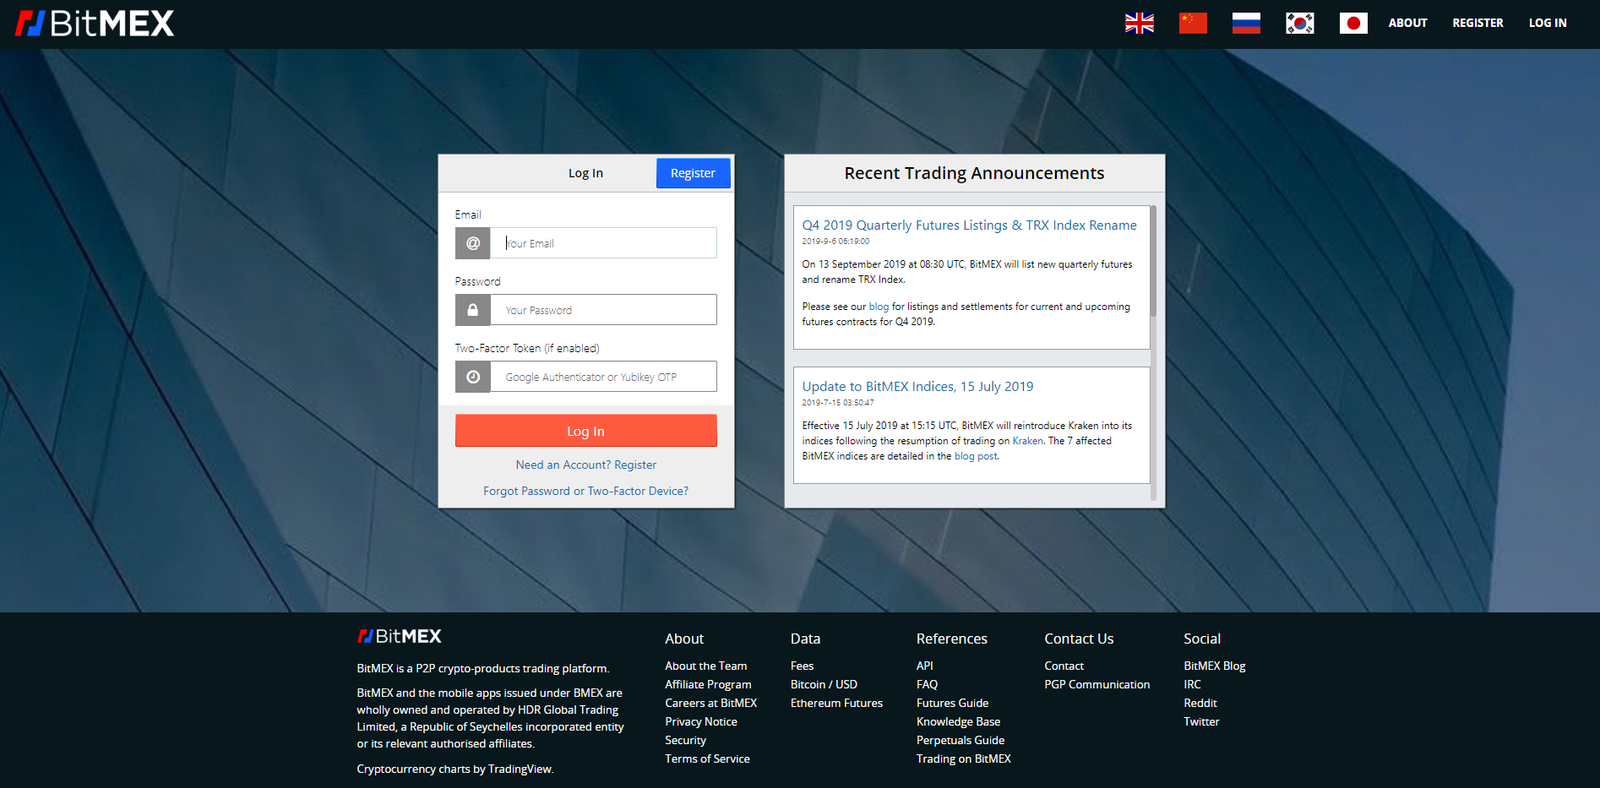 Bitmex website homepage